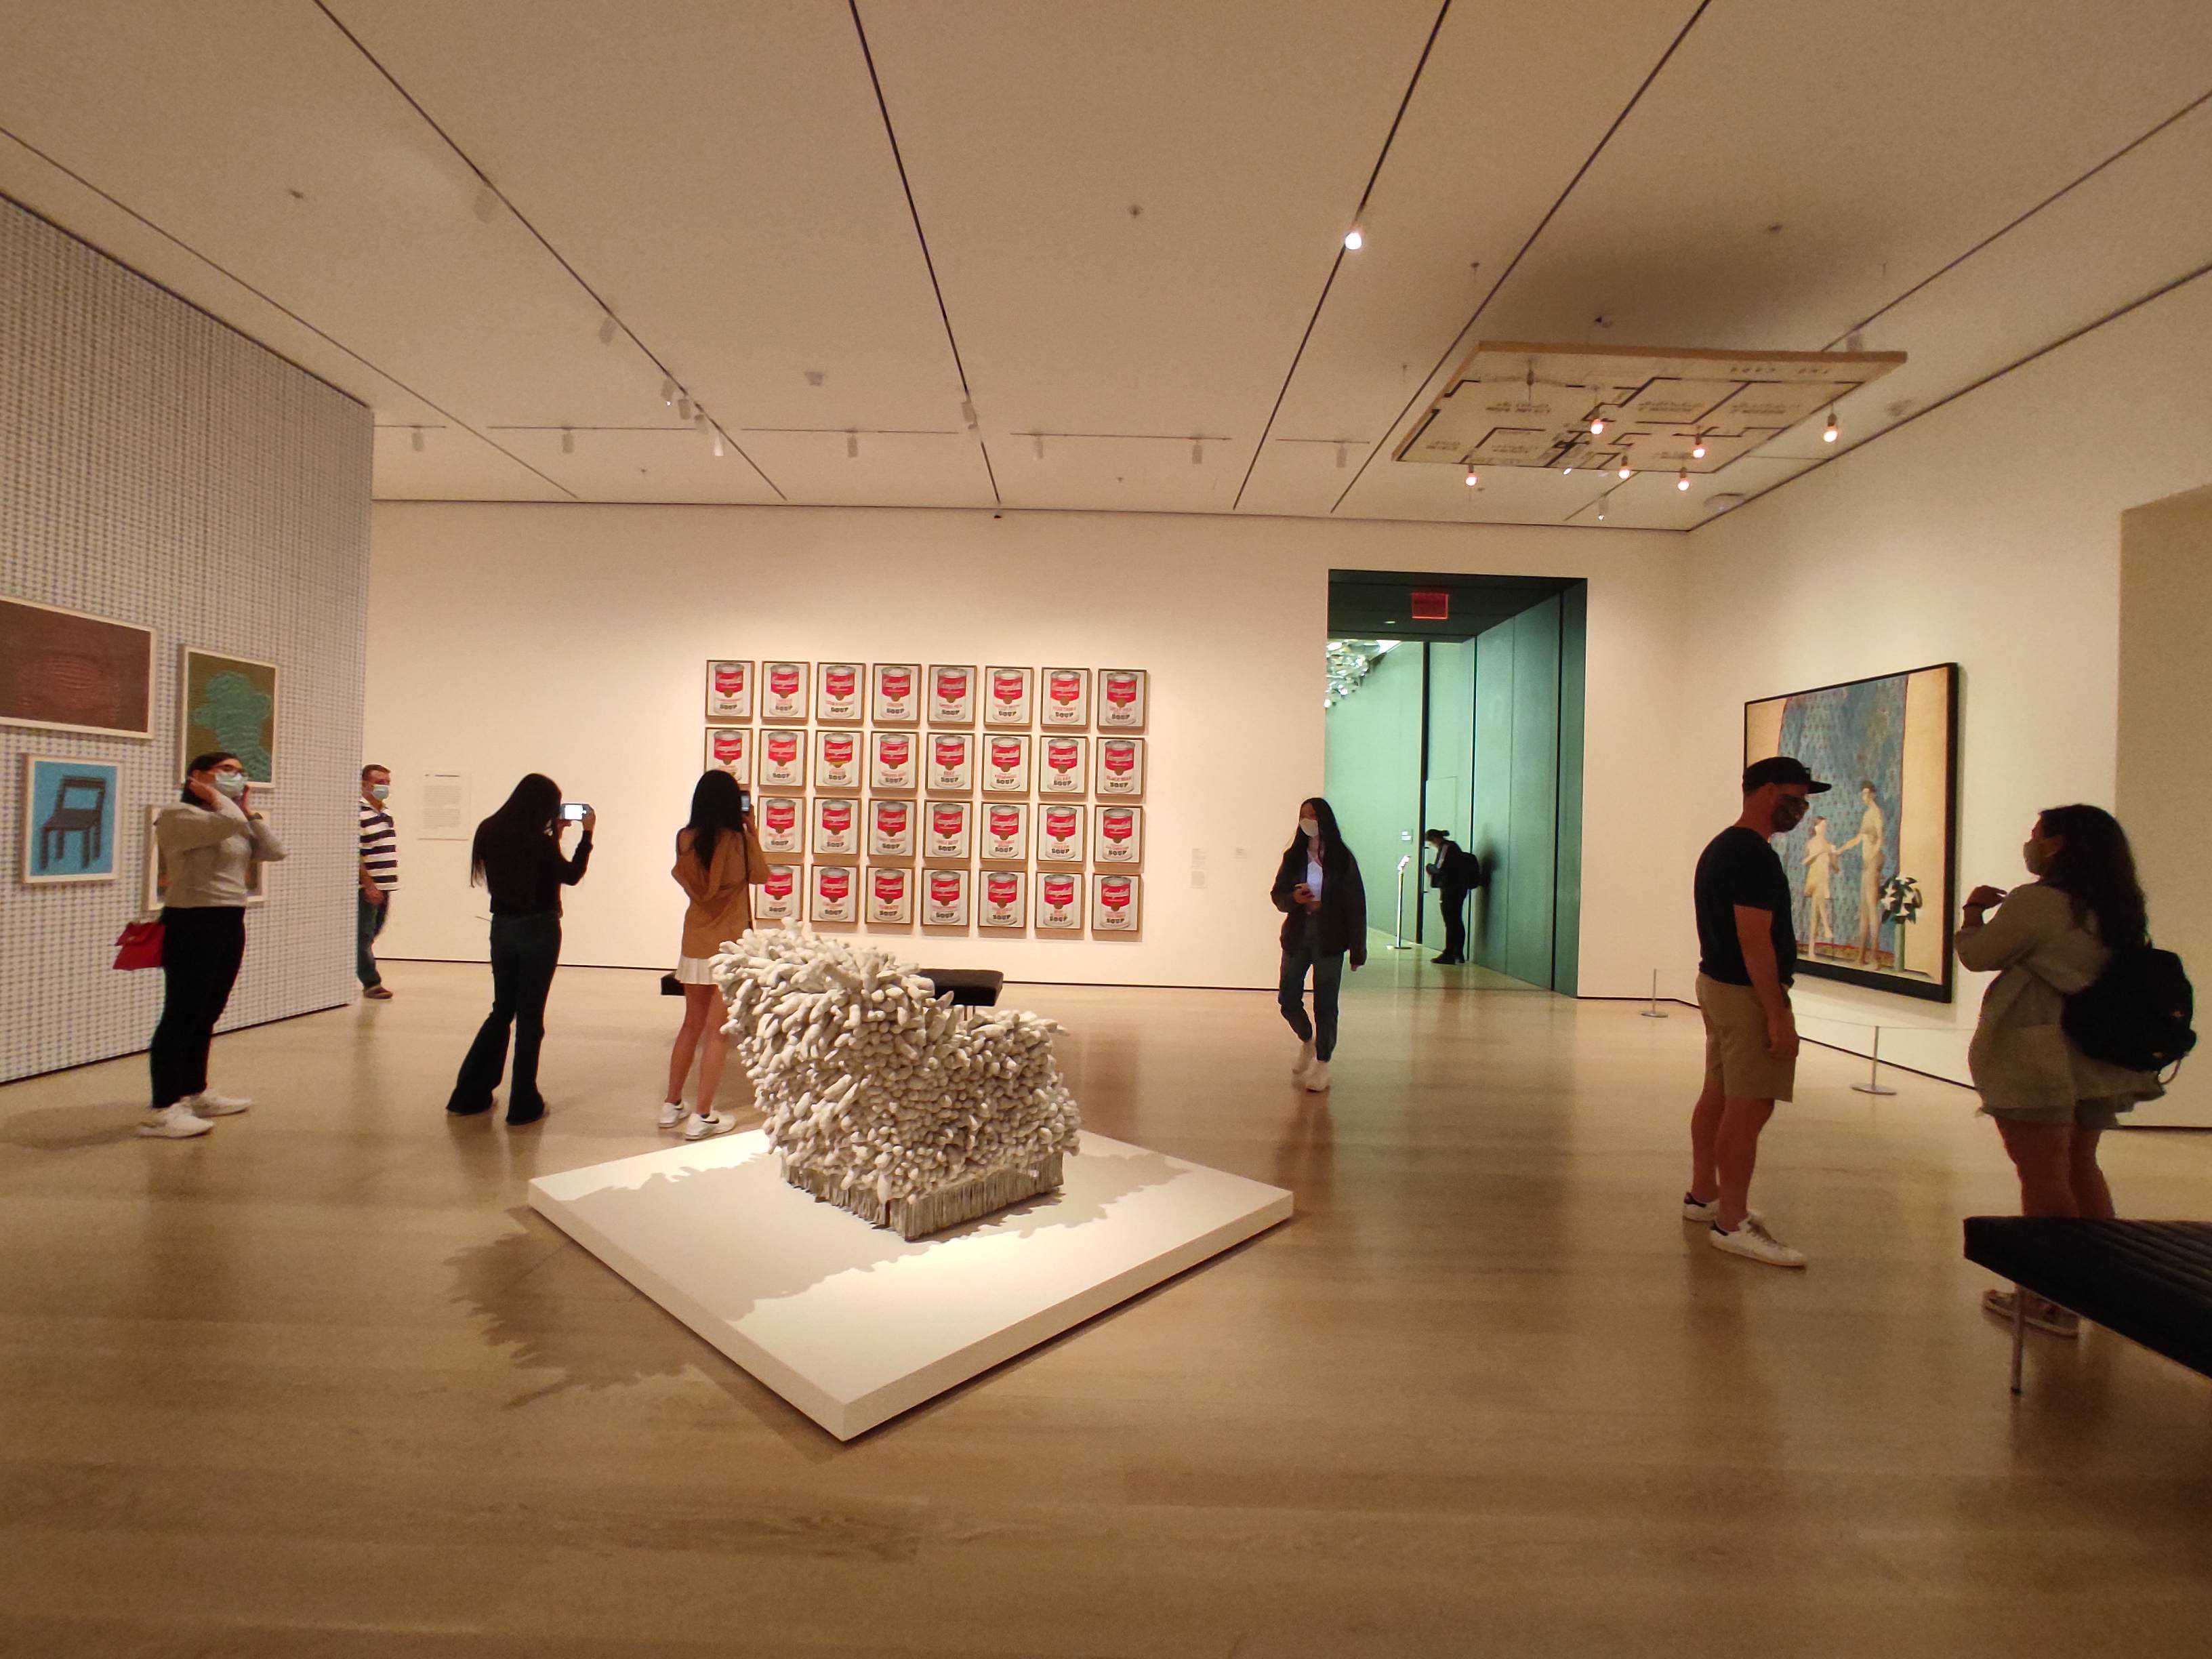  <뉴욕 현대 미술관 모마는 입장객들의 숫자를 제한하고, 인터넷으로 미리 입장권을 구매하도록 하는 등 방역에 노력을 기울이고 있다.>